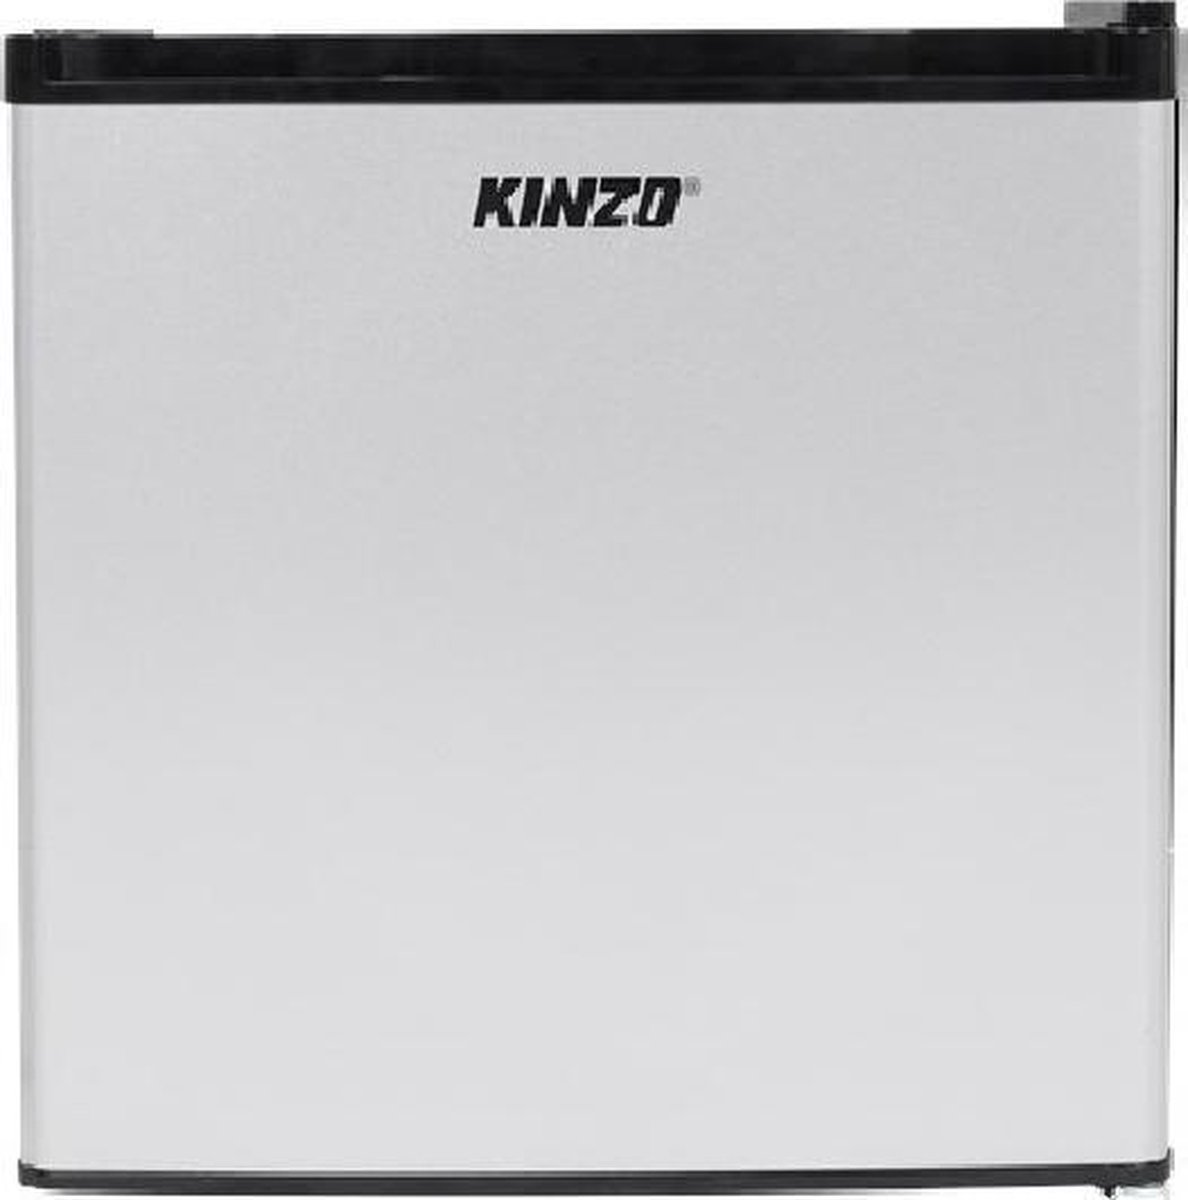 4 litres / 6 canettes KIMISS Mini réfrigérateur et réchaud électrique Bleu Système thermoélectrique pour Voiture